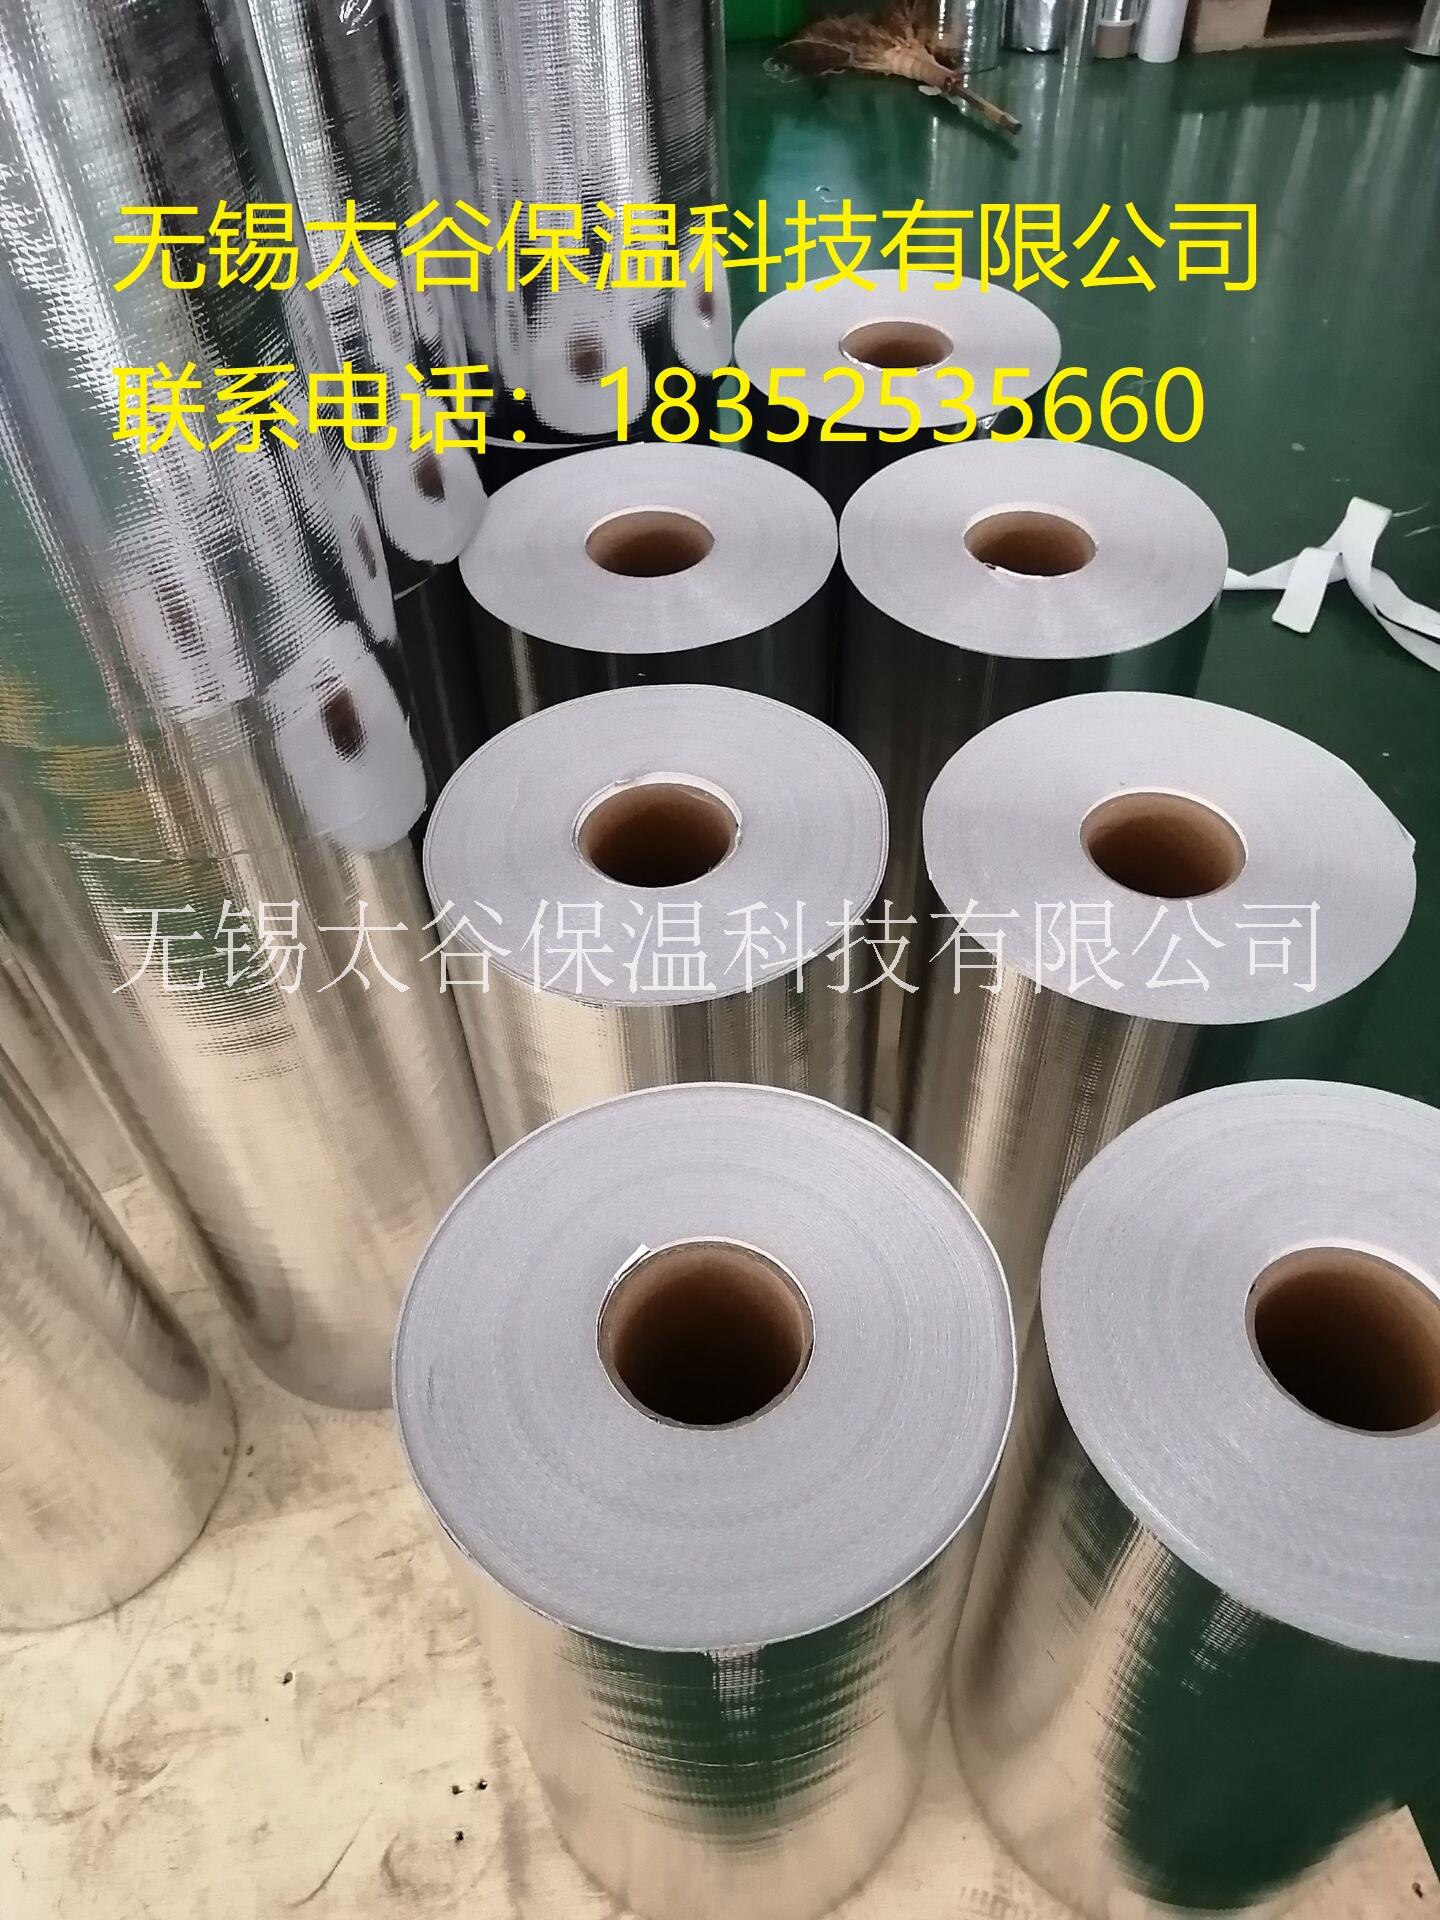 无锡市上海 珍珠棉铝膜编织布 编织布淋厂家上海 珍珠棉铝膜编织布 编织布淋 厂家直销